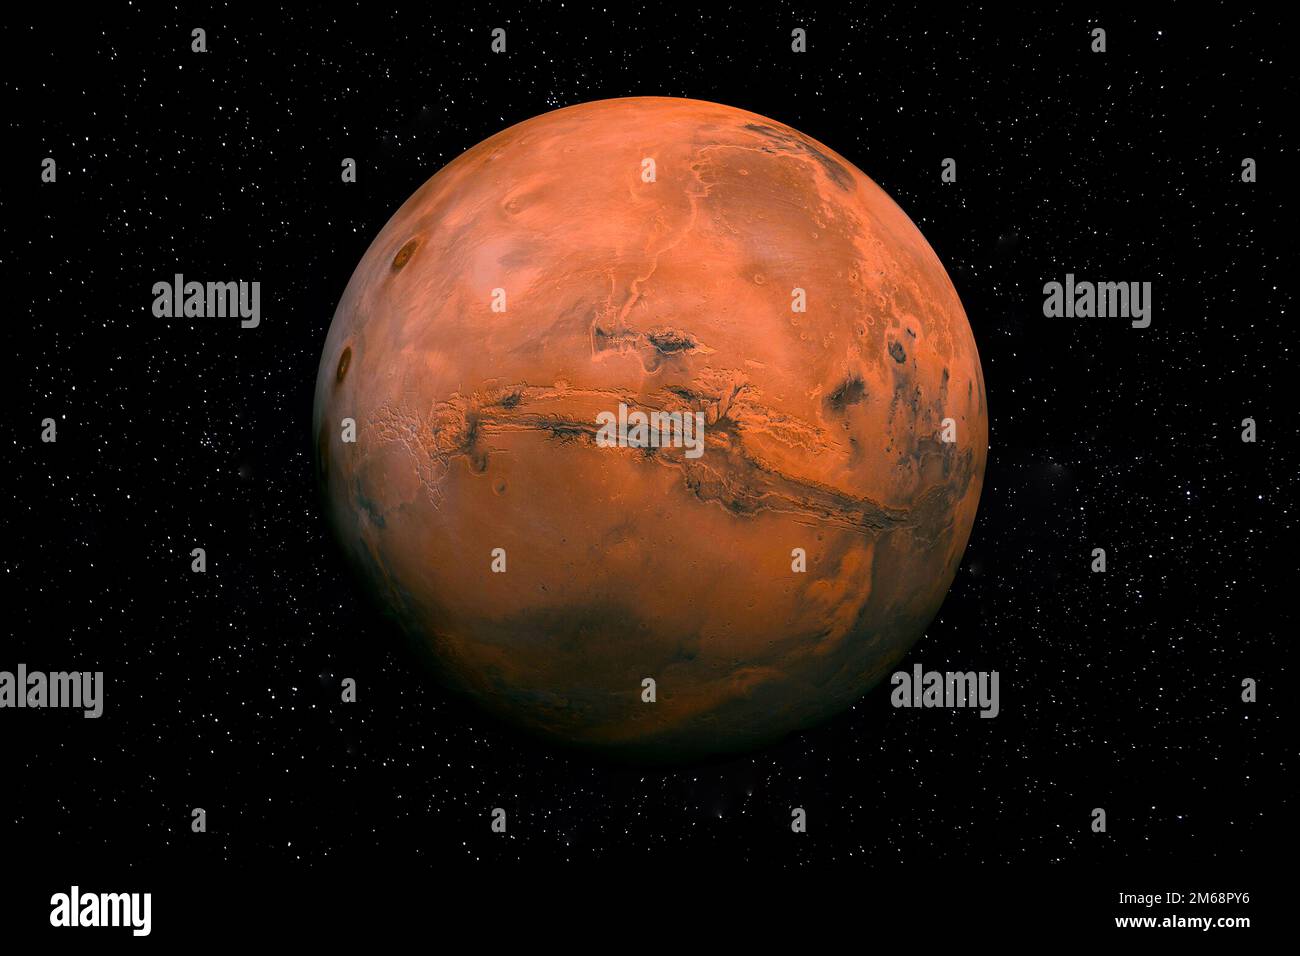 Roter Planet Mars im Weltall, umgeben von Stars. Diese Bildelemente wurden von der NASA bereitgestellt. Stockfoto